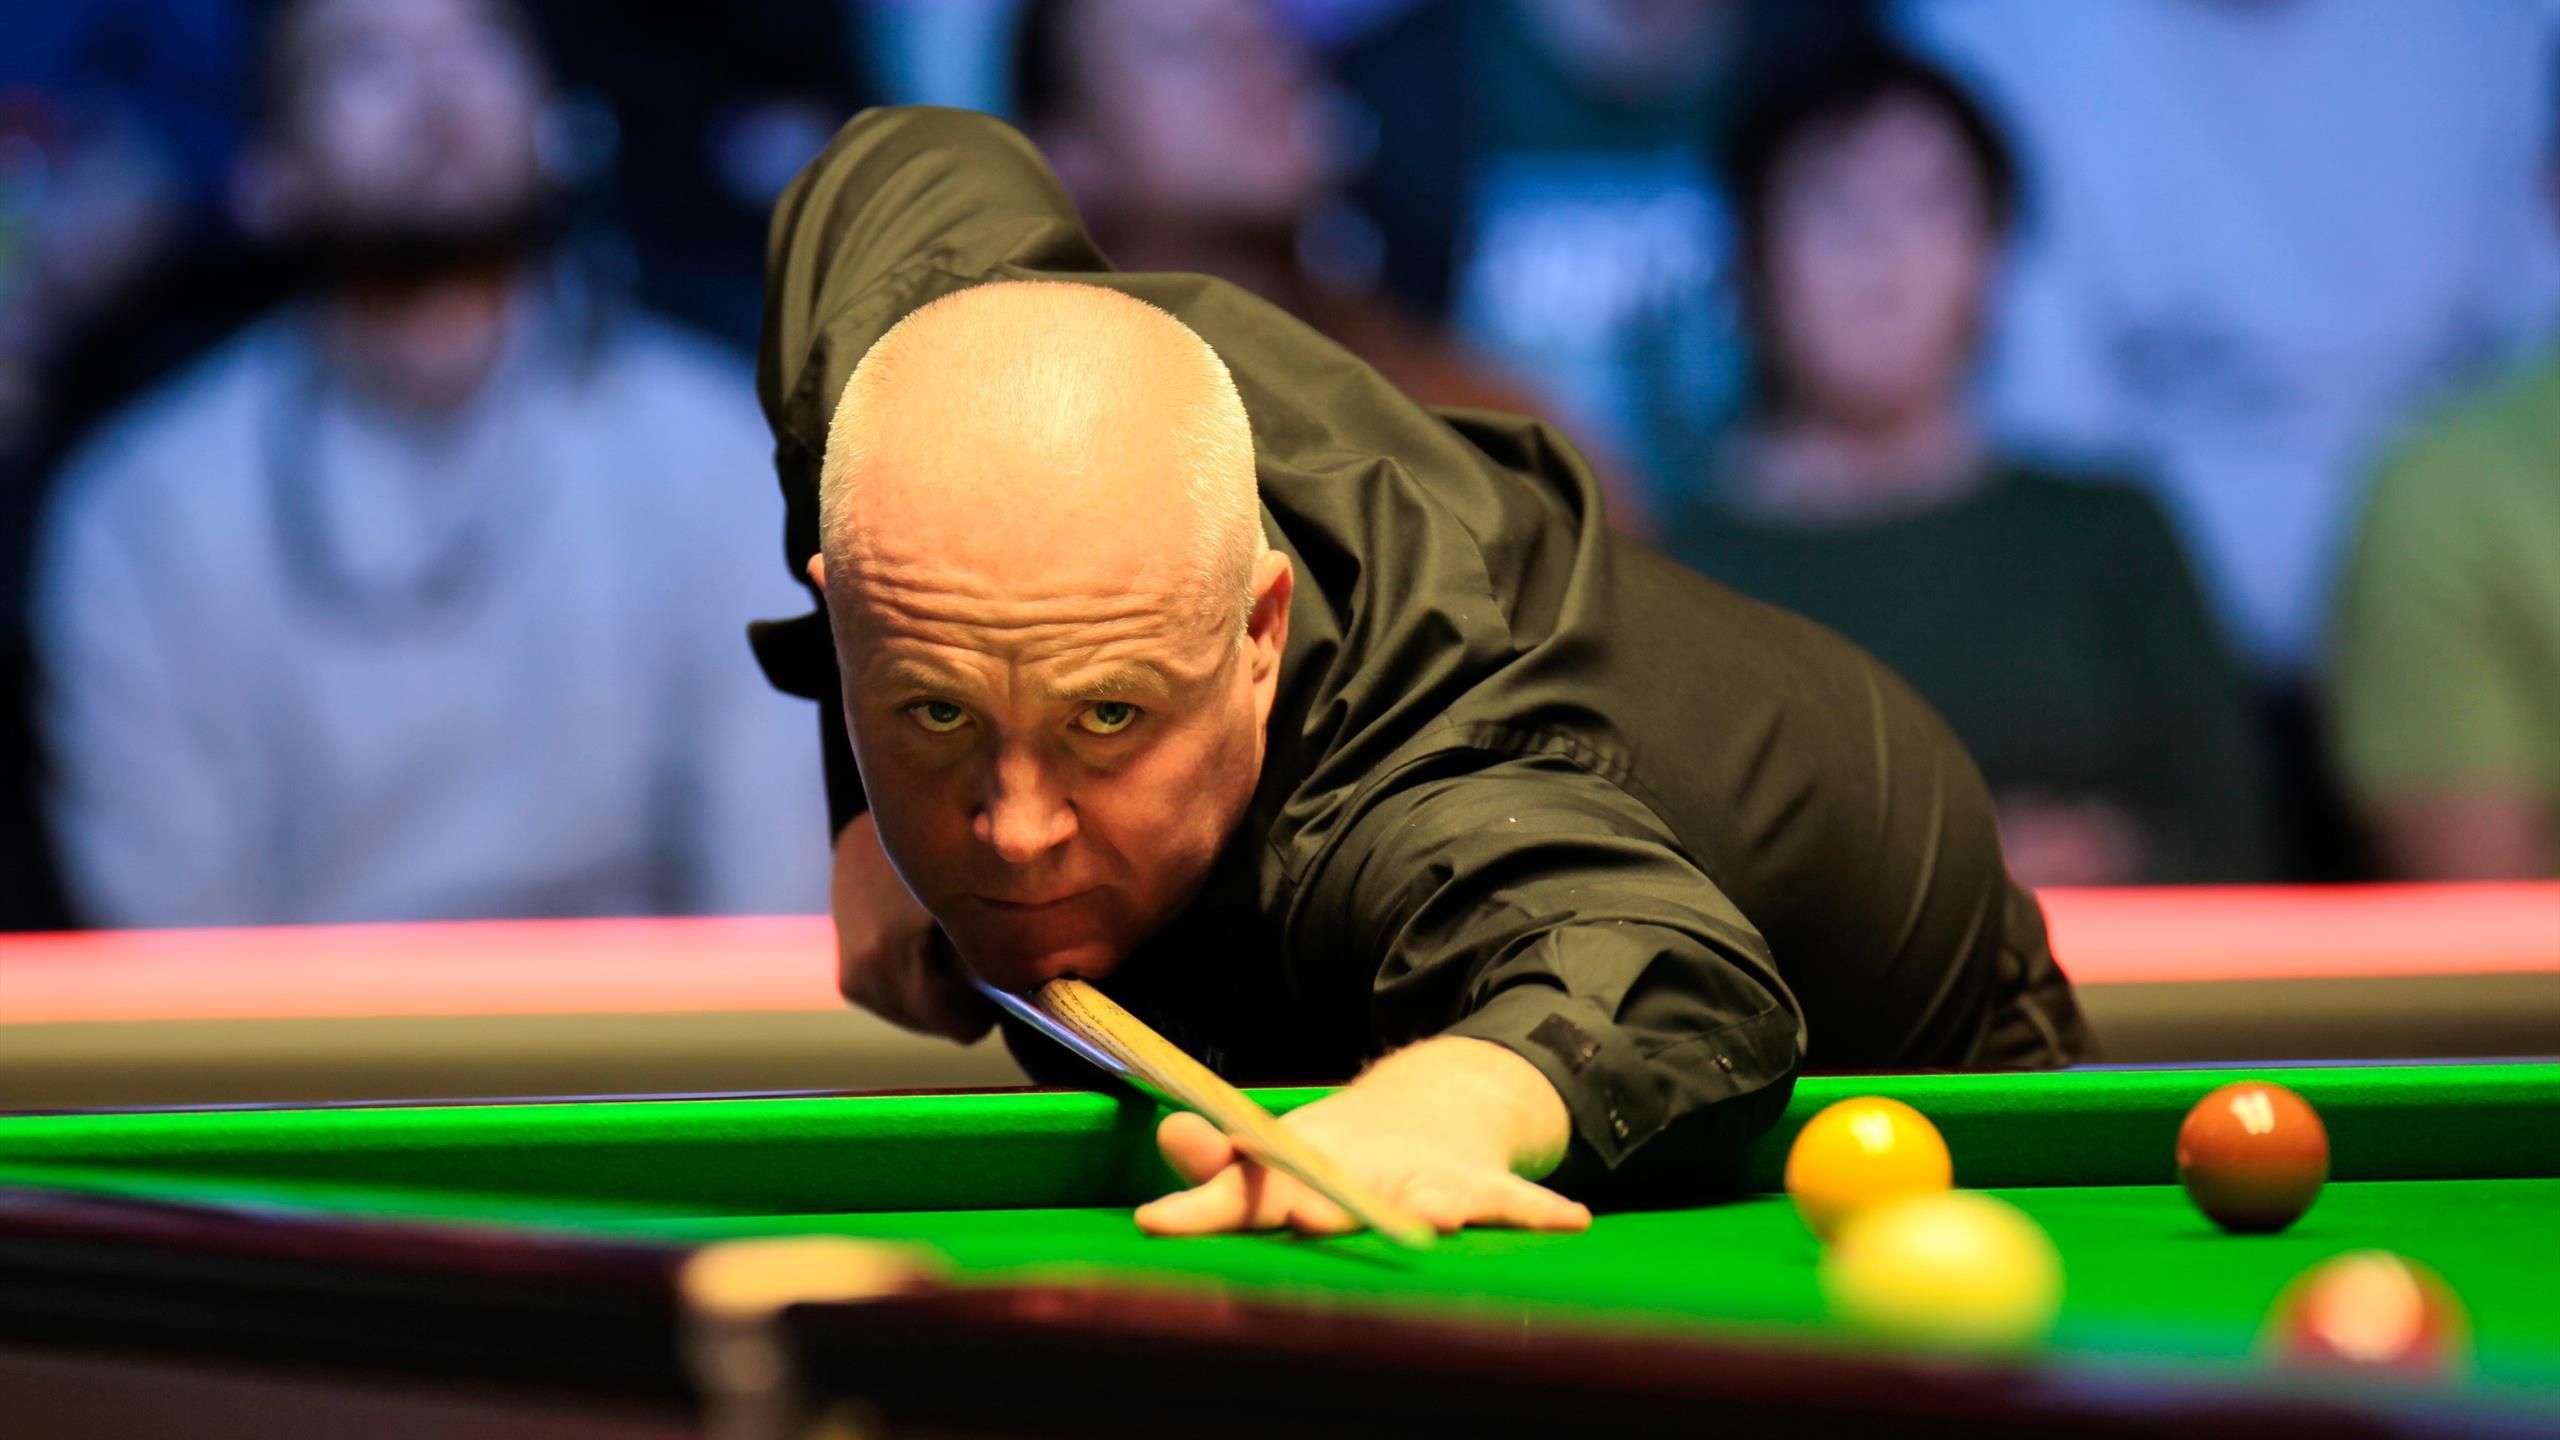 English Open John Higgins landet zweites Century im vierten Frame im Halbfinale gegen Judd Trump - Snooker Video